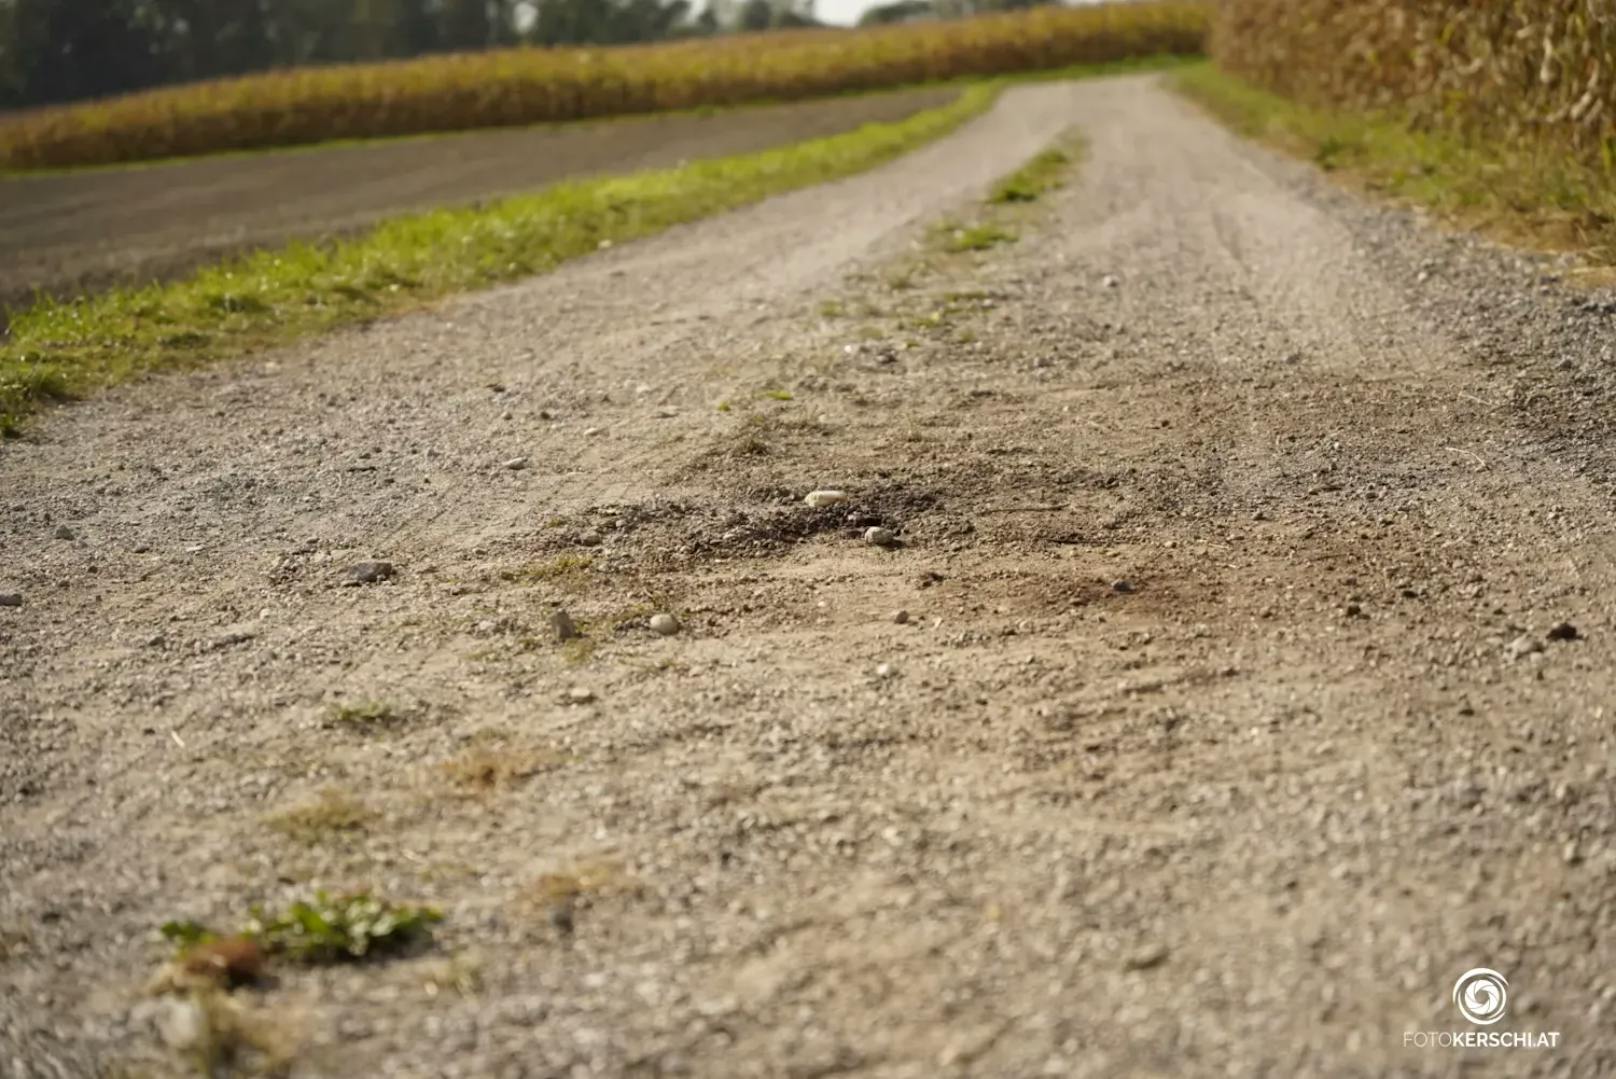 Zur selben Zeit joggte eine 60-Jährige aus dem Bezirk Perg auf dem betreffenden Feldweg. Aus bislang unbekannter Ursache griff der American Staffordshire die vorbeilaufende Joggerin an.